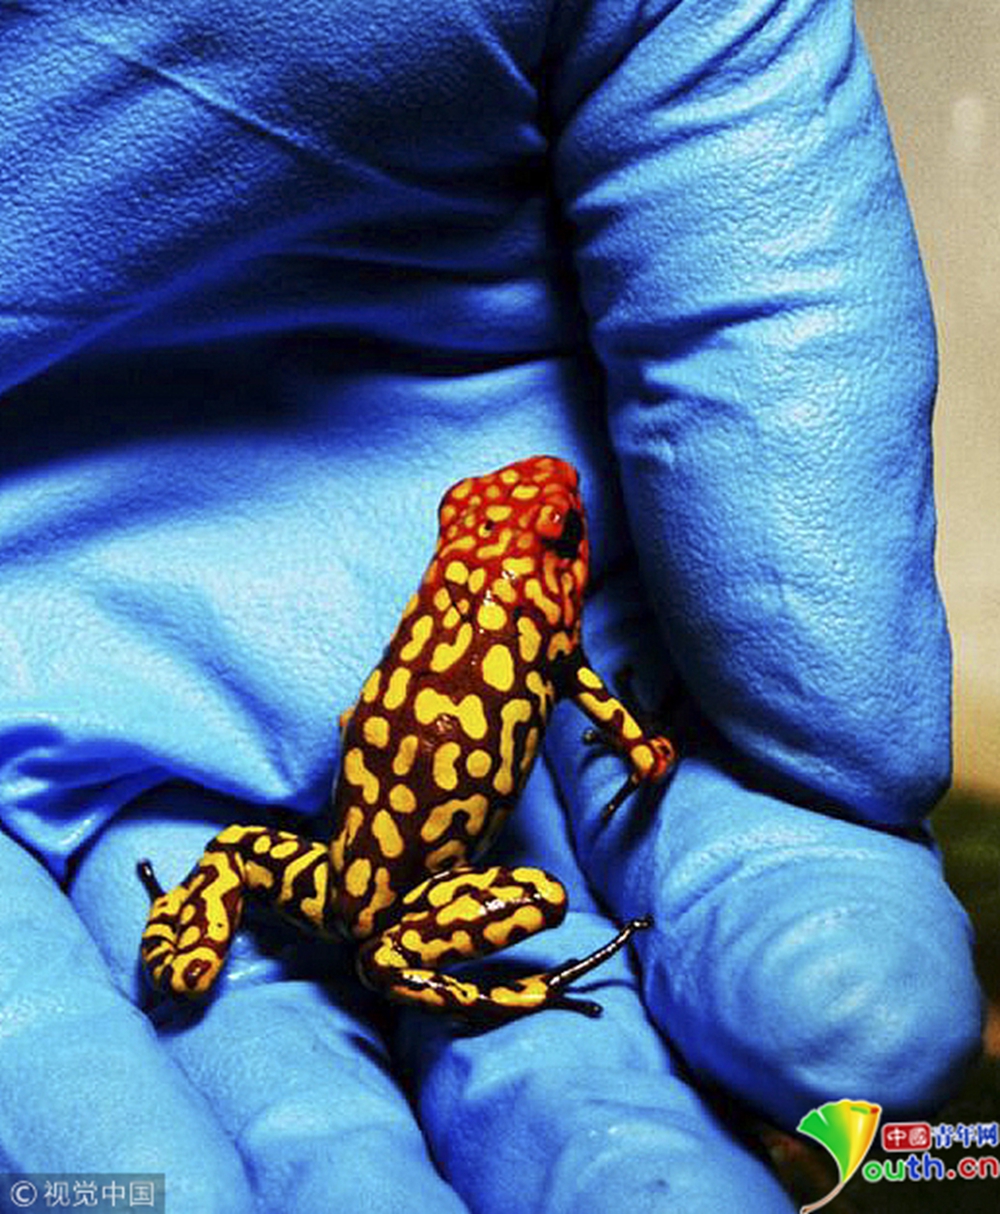 哥伦比亚警方截获一批走私有毒青蛙 每只约2000美元